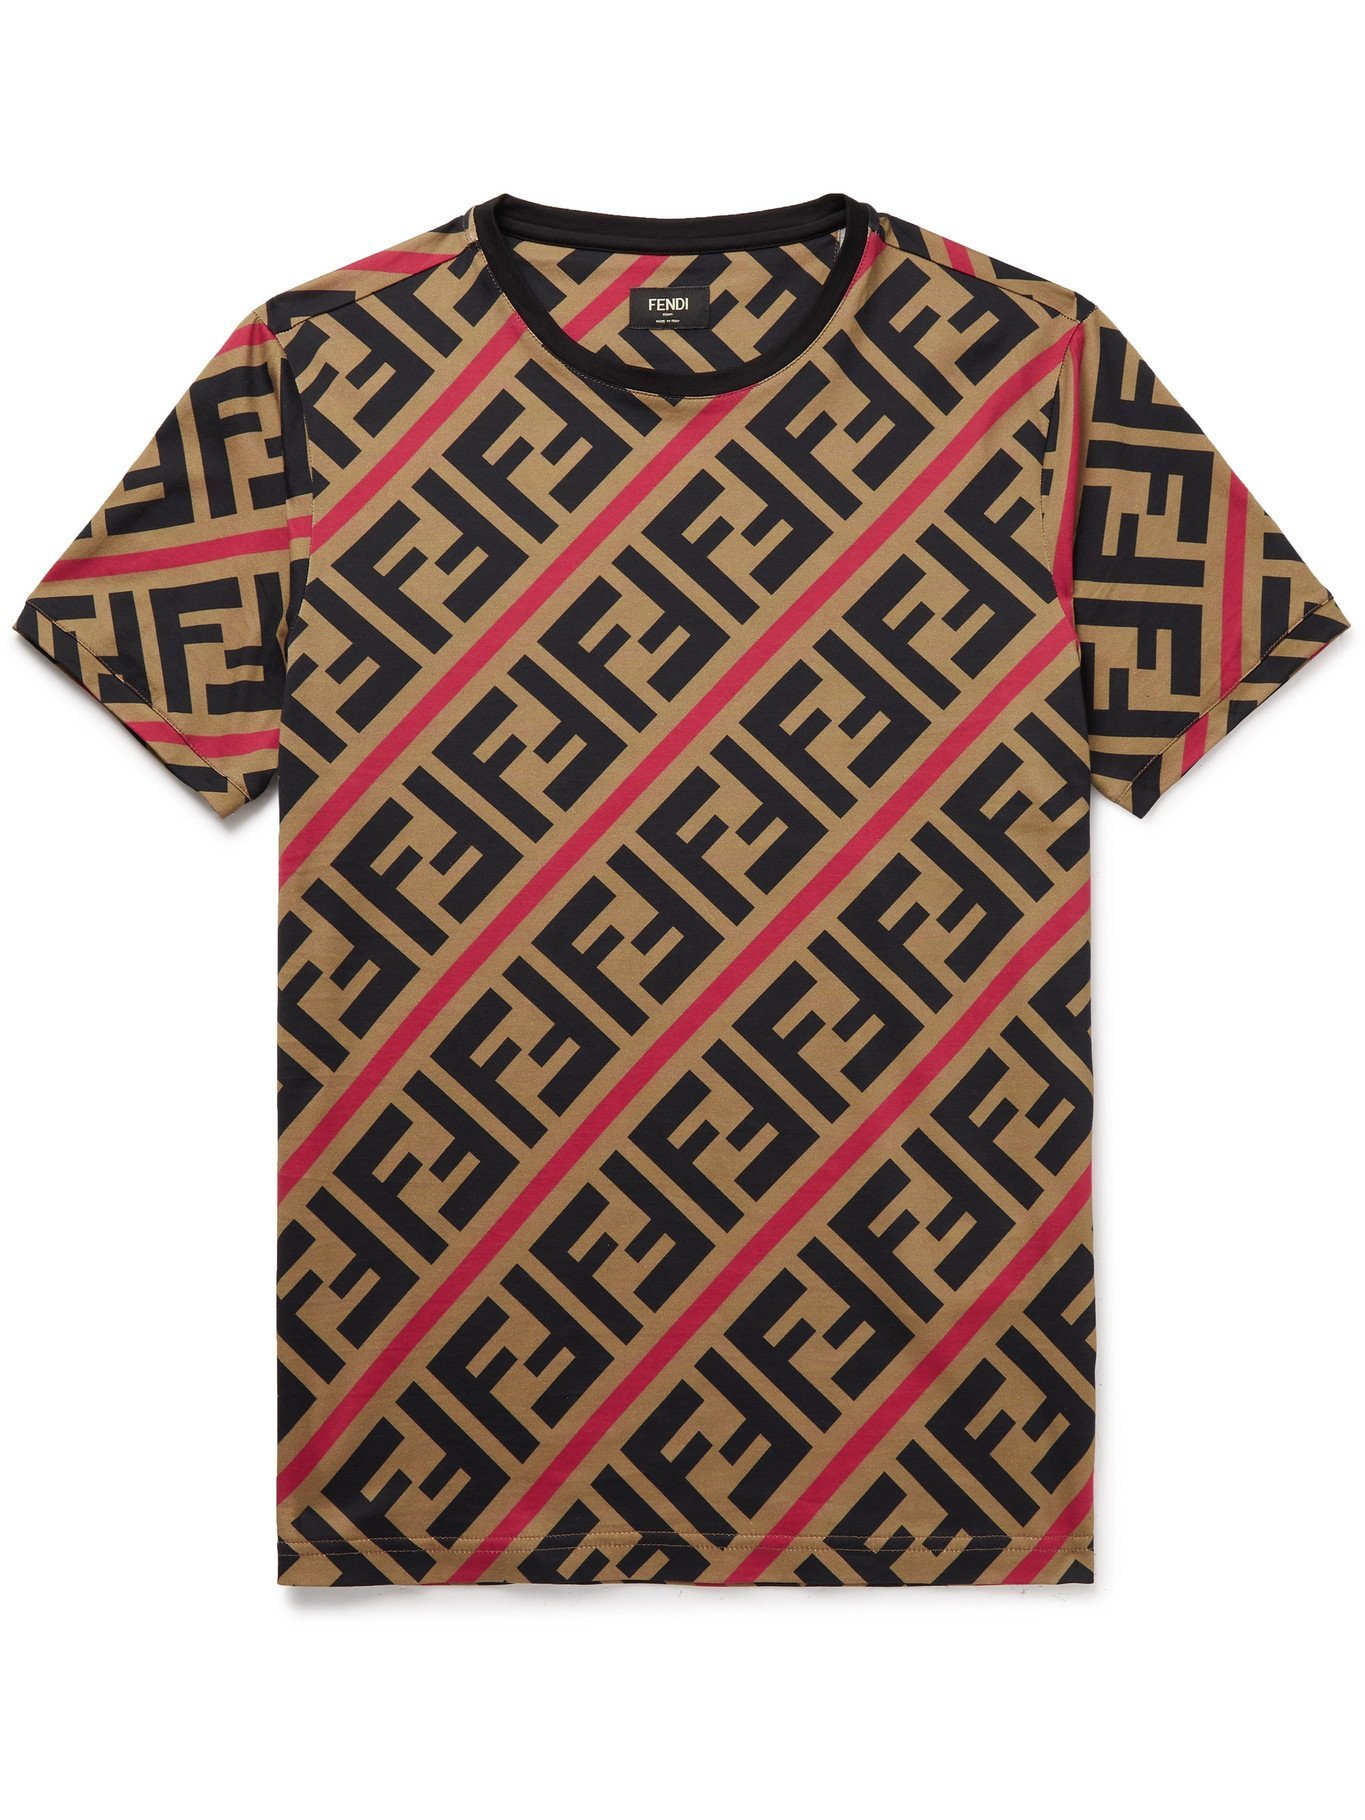 FENDI - Logo-Print Cotton-Jersey T-Shirt - Brown - M Fendi